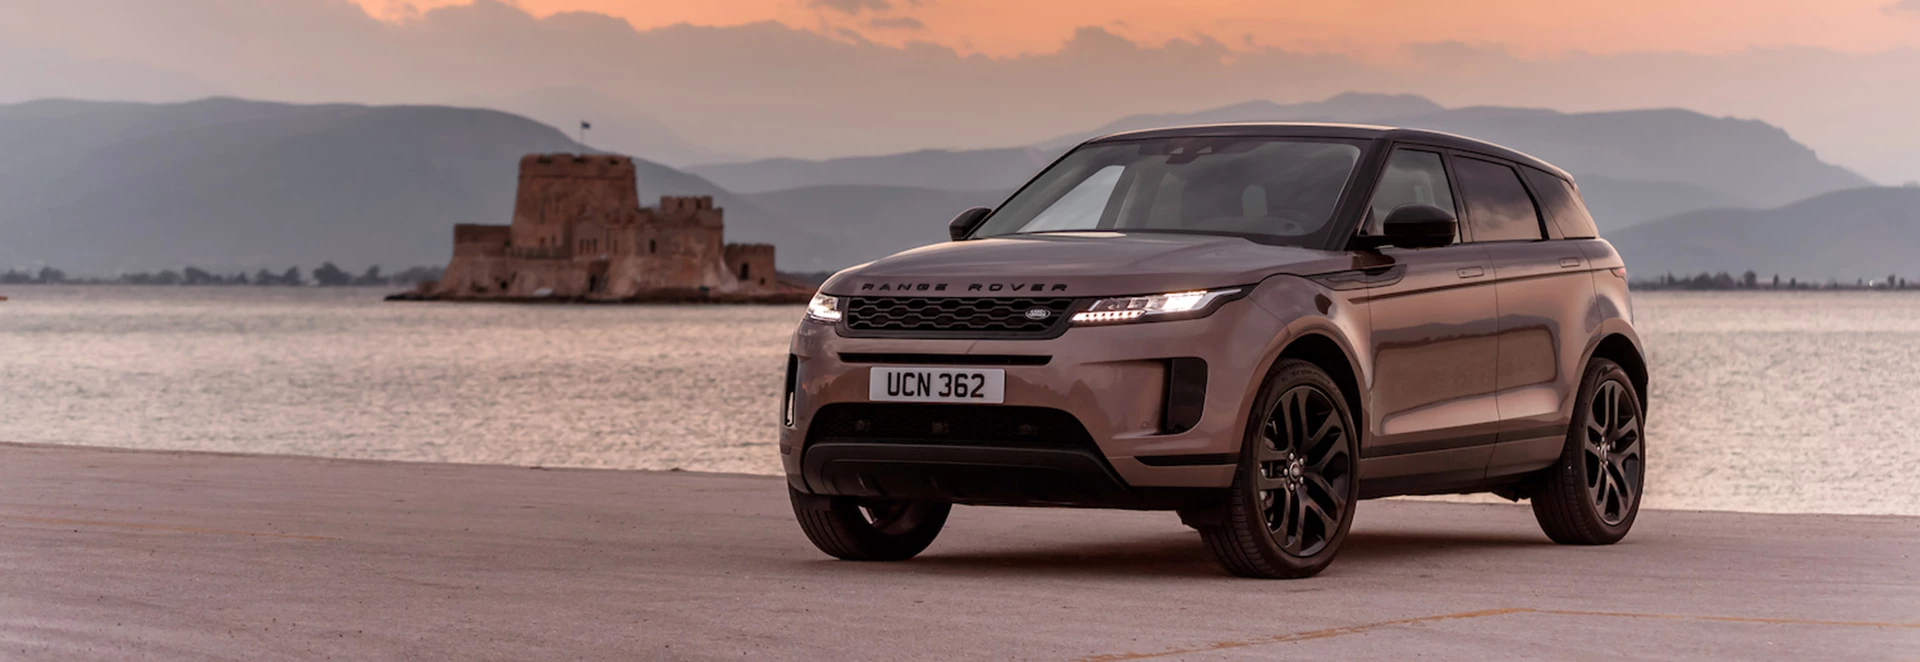 Range Rover Evoque lands five-star safety rating 